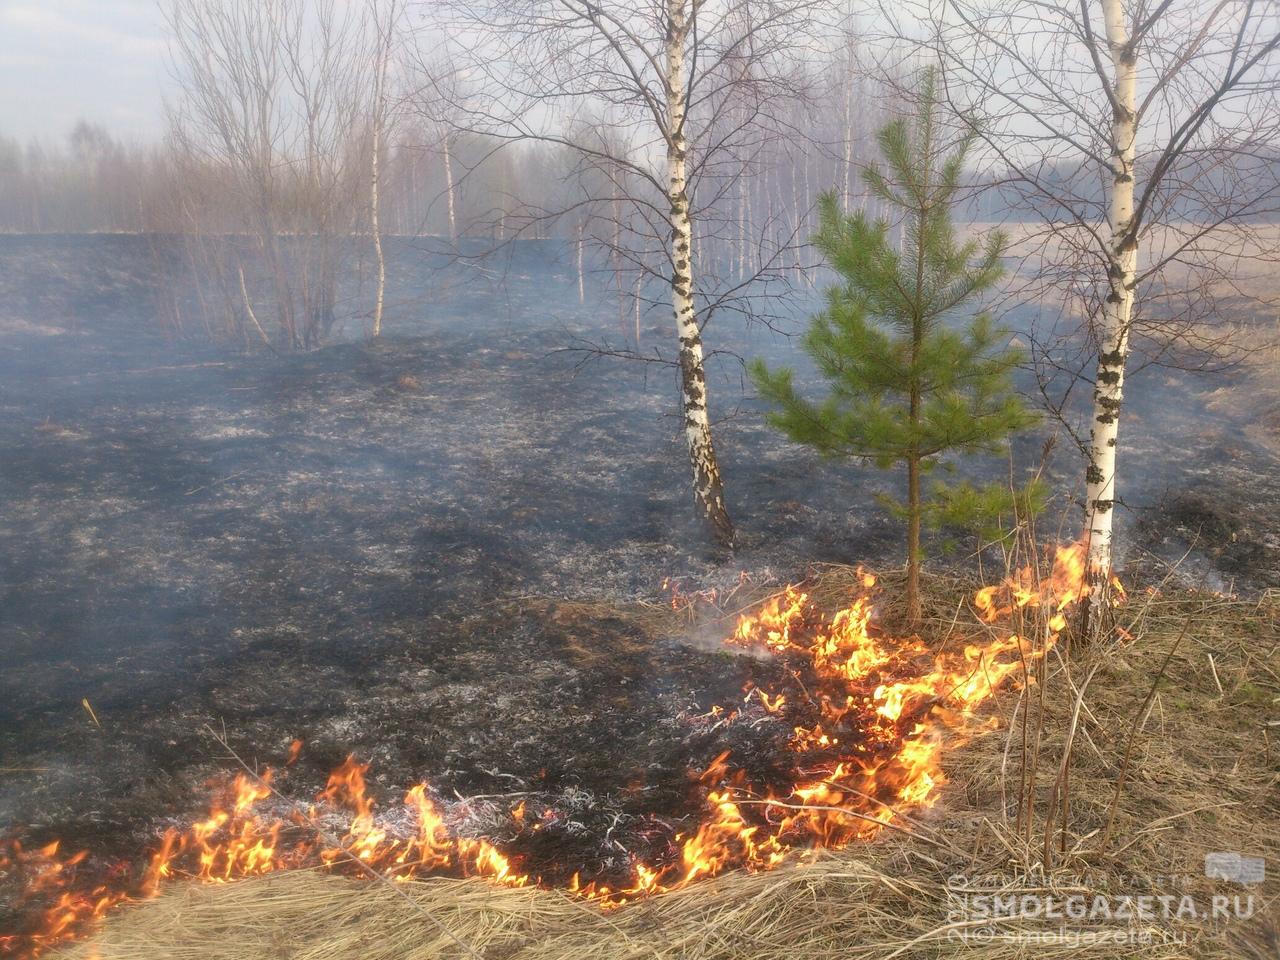 Благодаря ухудшению погоды в Смоленской области сократилось количество травяных палов 